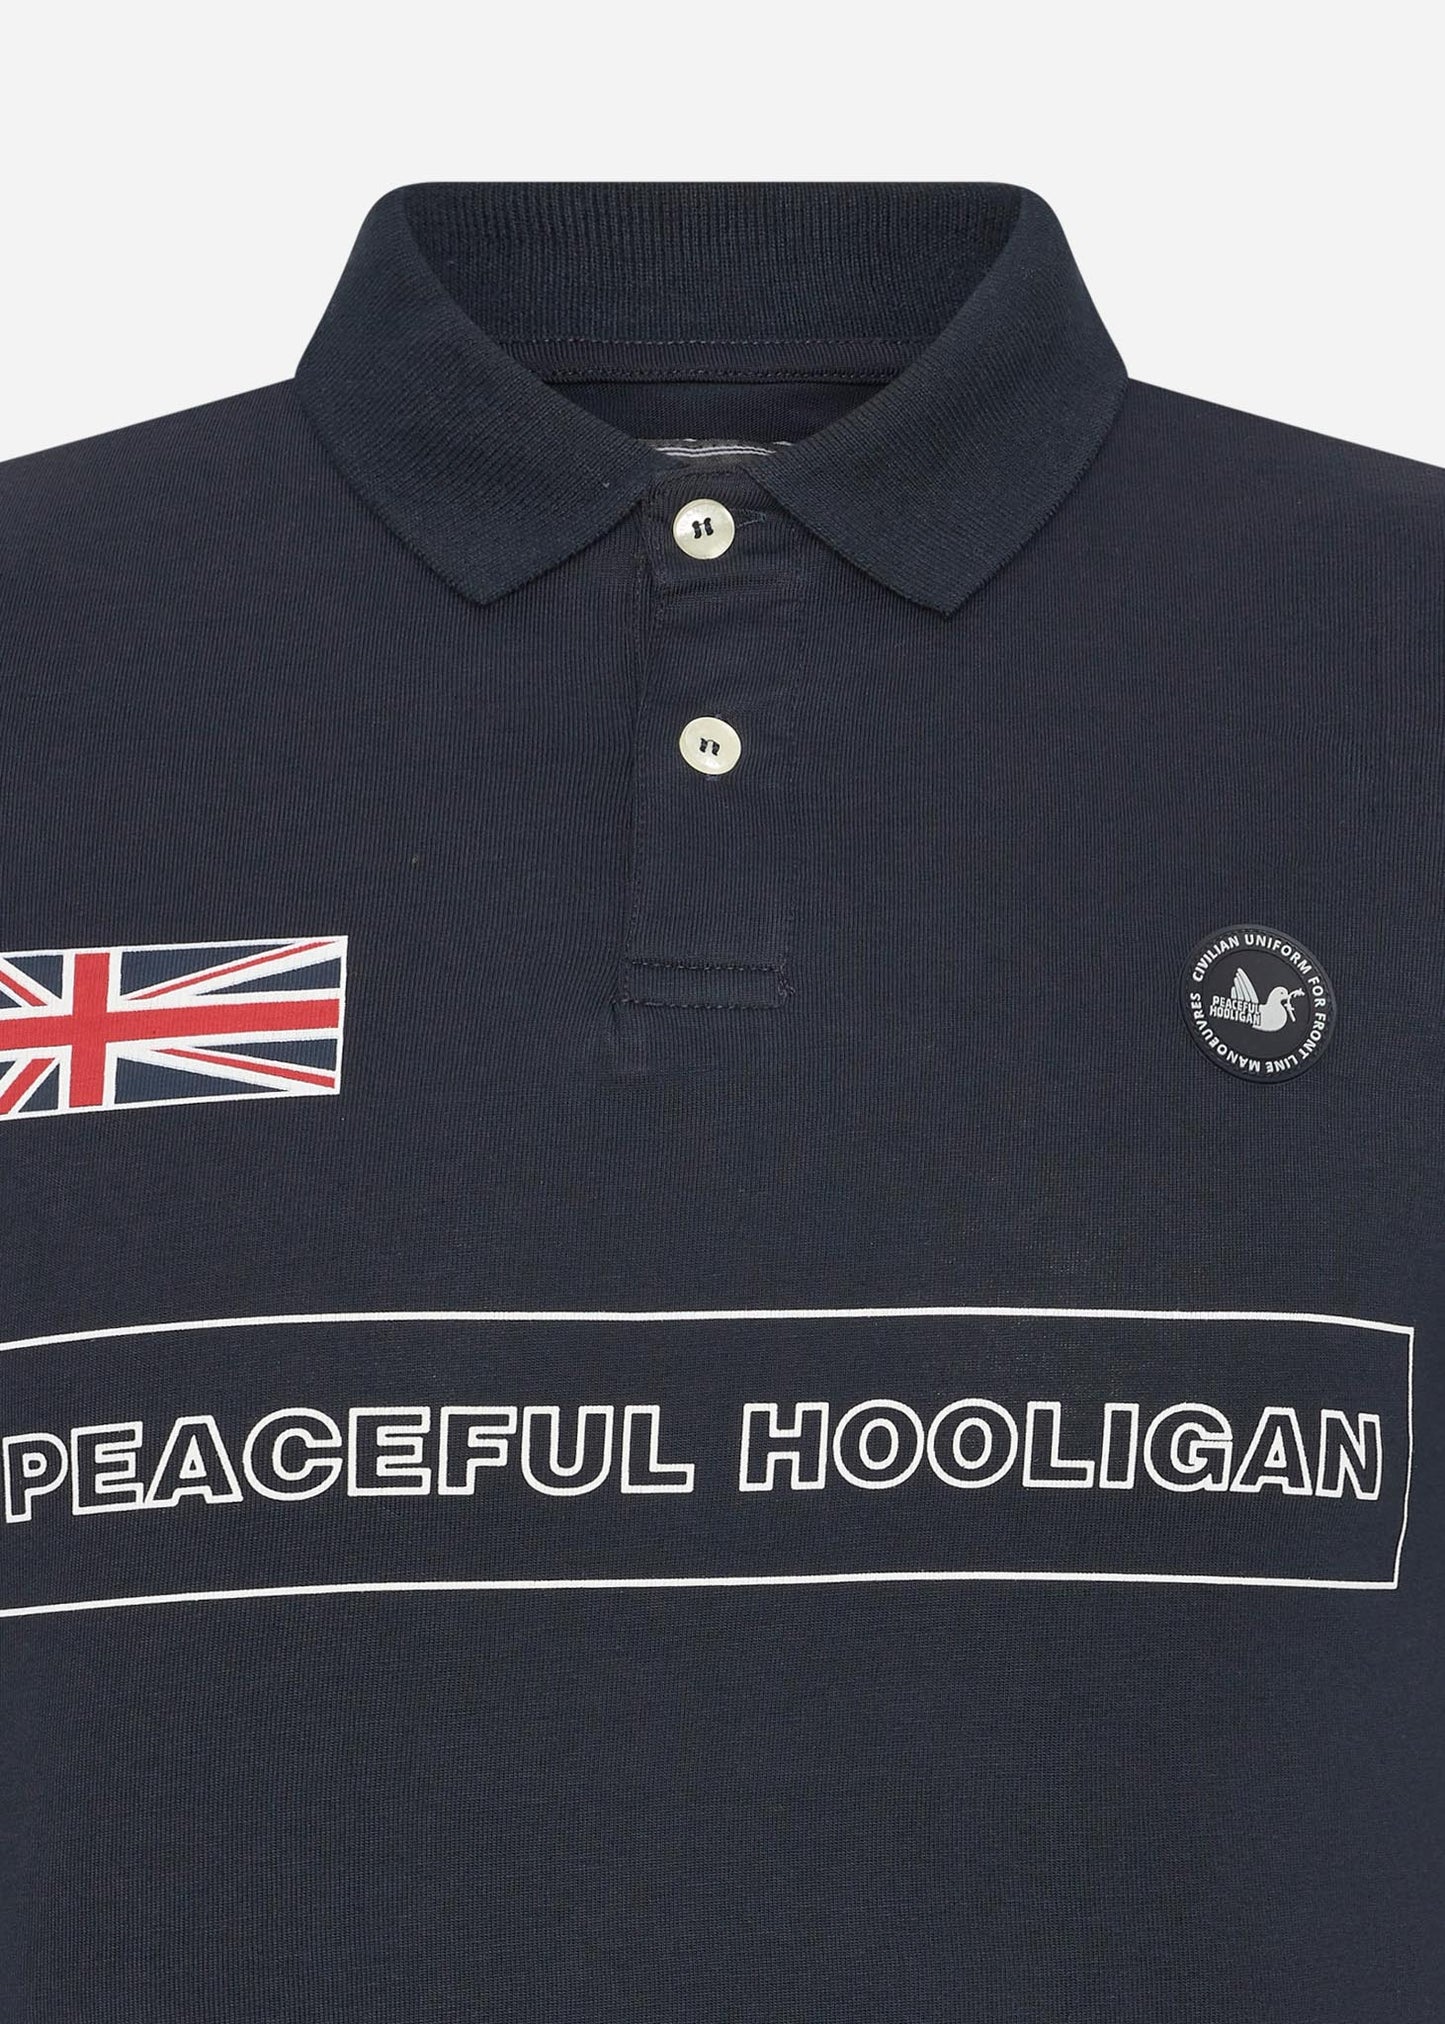 Peaceful Hooligan Polo's  Flag polo - navy 